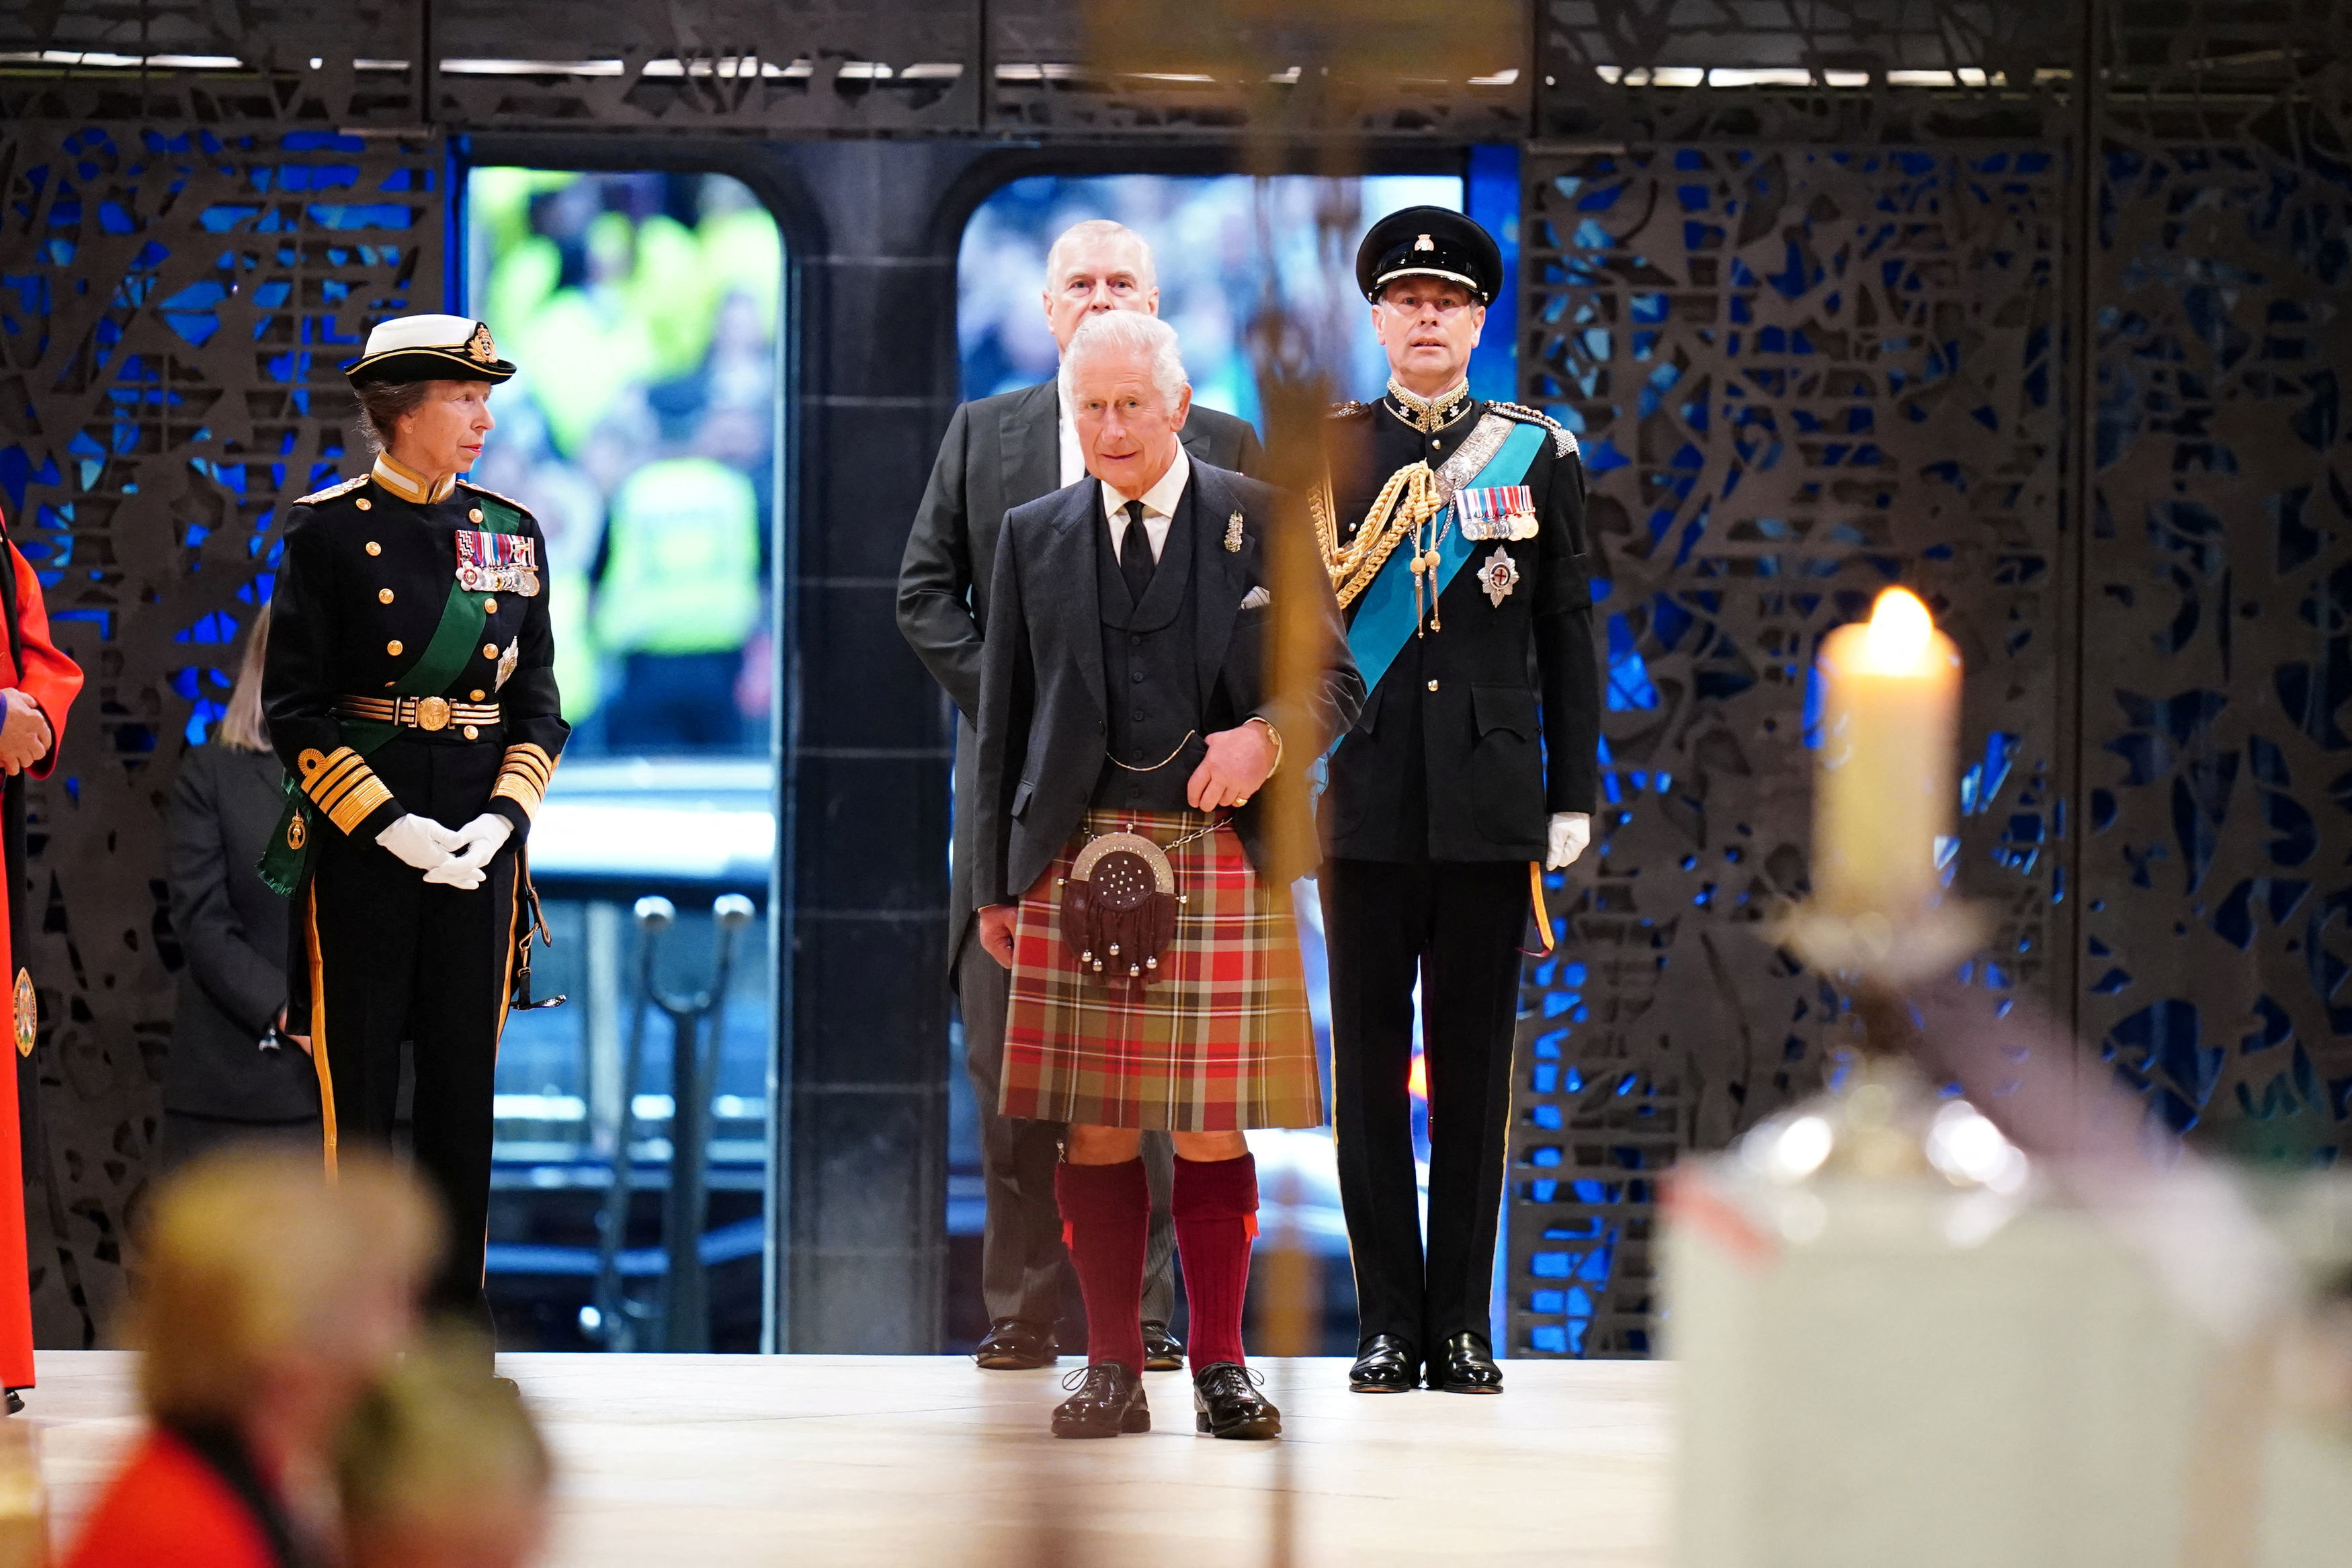 El rey Carlos III, la princesa real, el duque de York y el conde de Wessex celebran una vigilia en la catedral de St Giles, Edimburgo, en honor a la reina Isabel II 
Jane Barlow/Pool via REUTERS